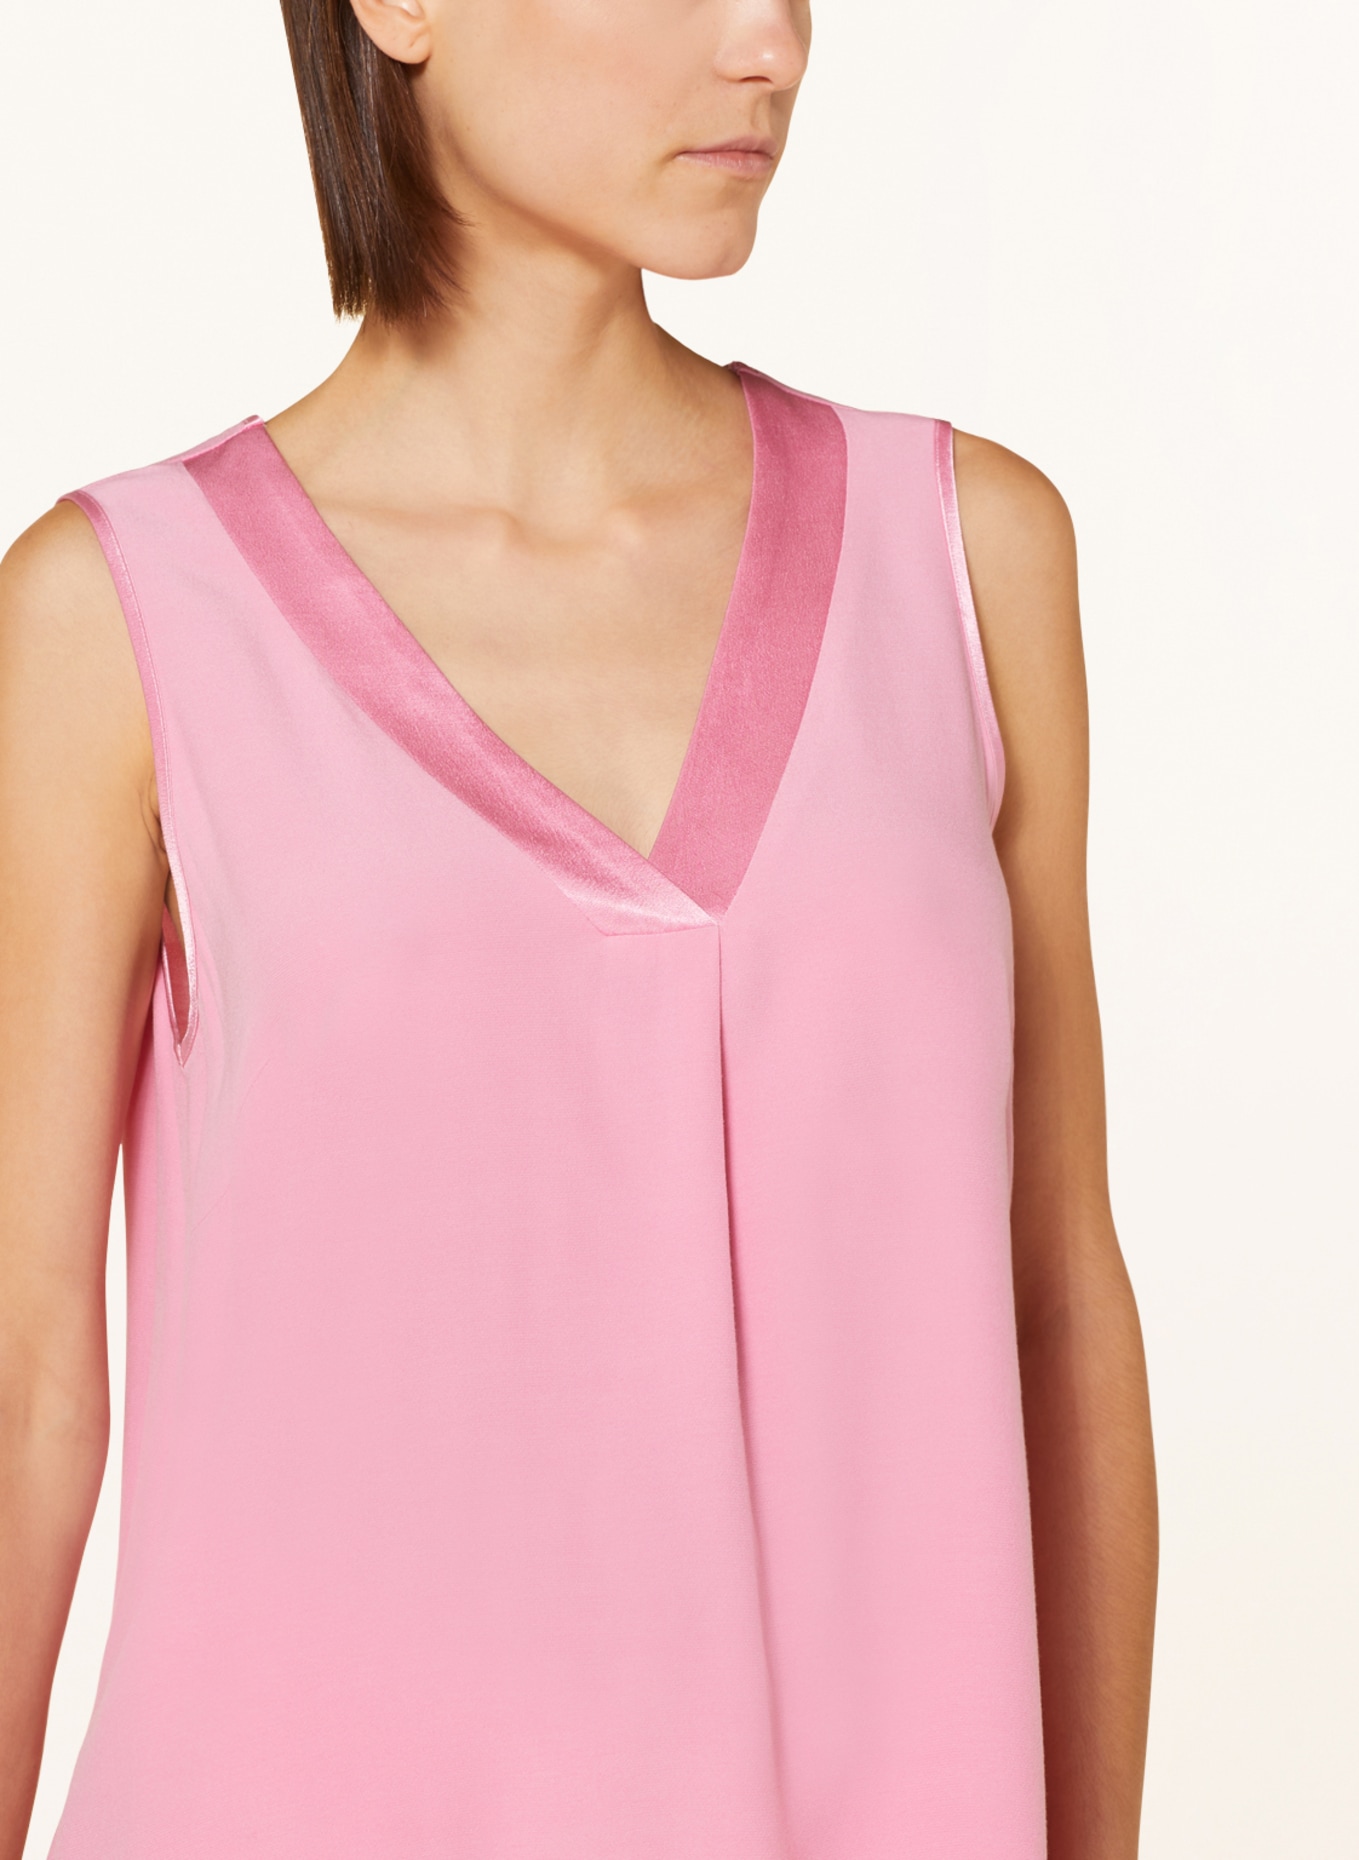 MARC AUREL Blouse top, Color: PINK (Image 4)